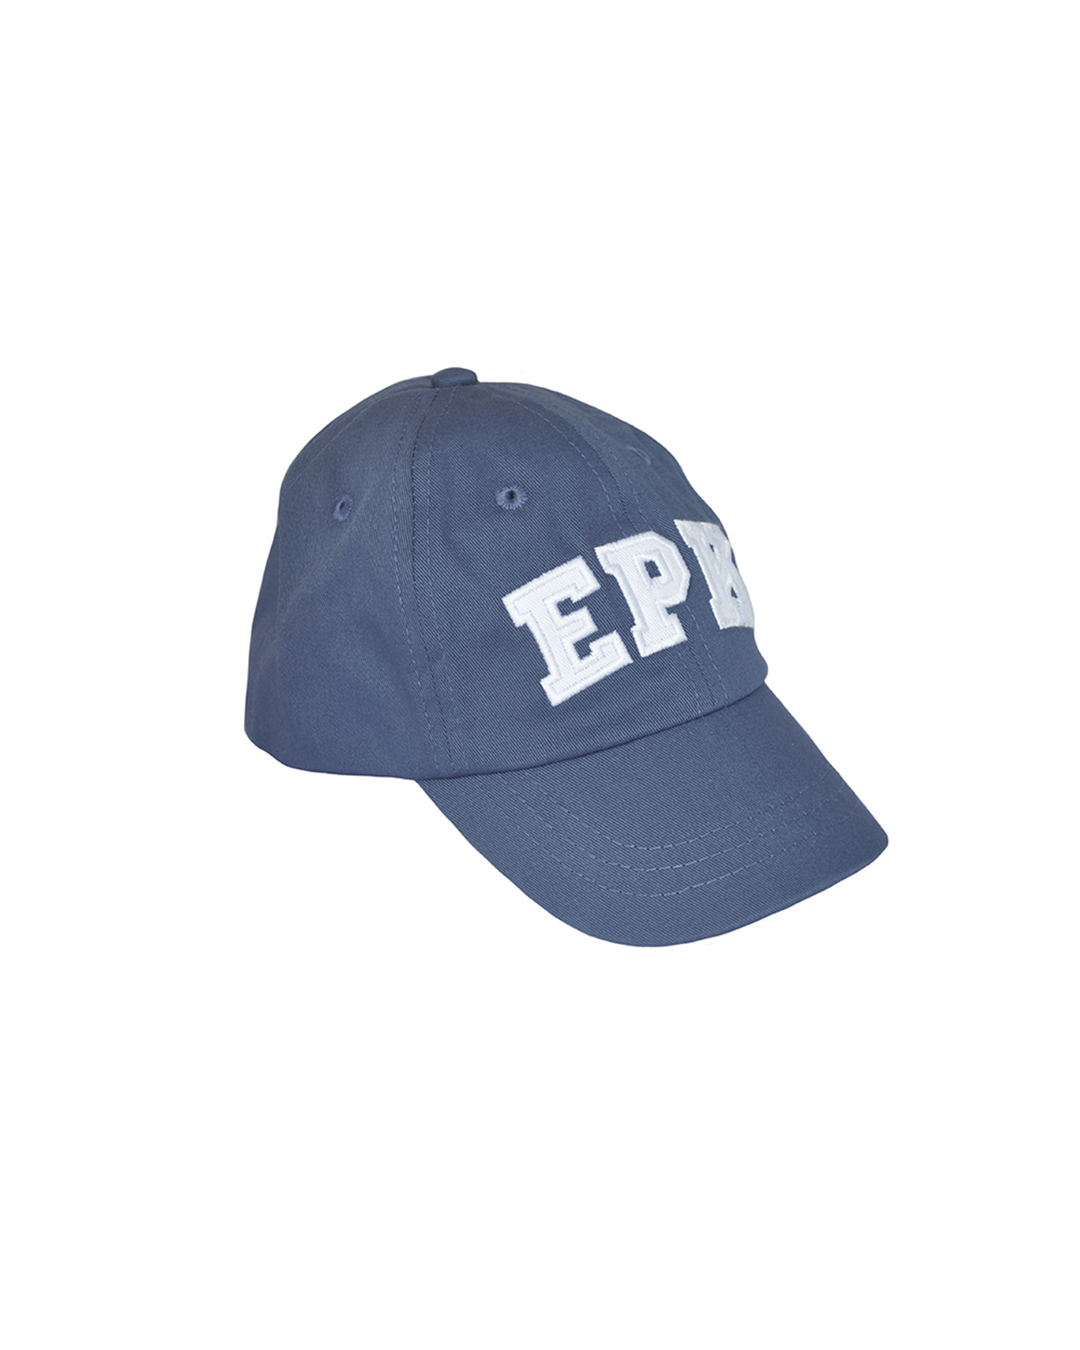 Gorra azul con EPK en blanco